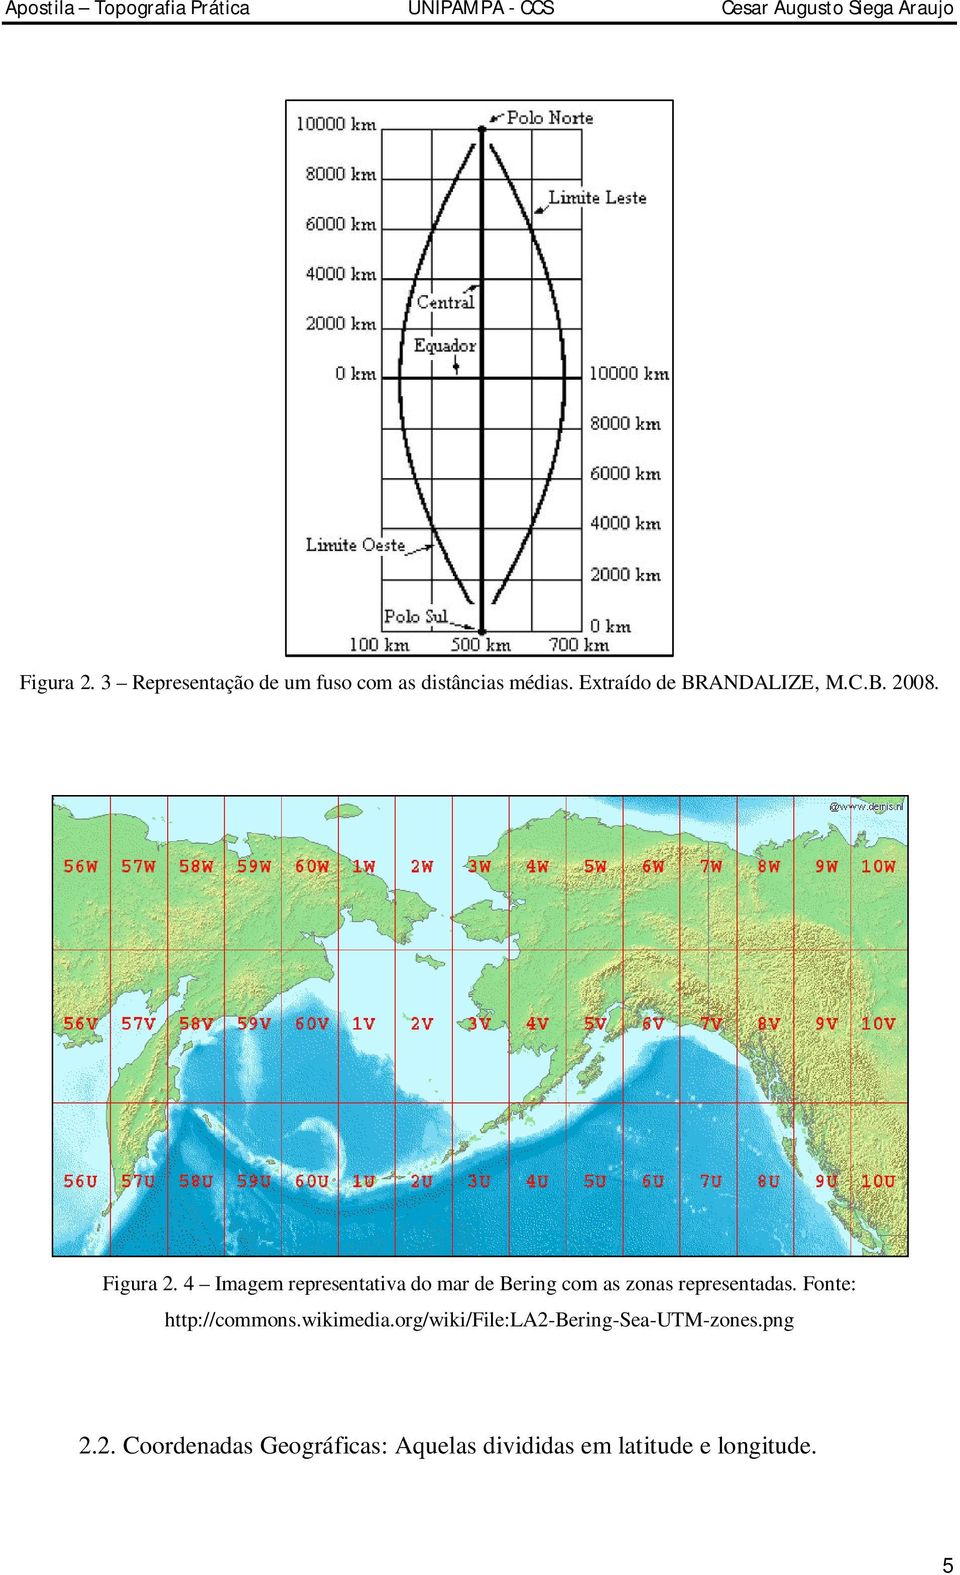 4 Imagem representativa do mar de Bering com as zonas representadas.